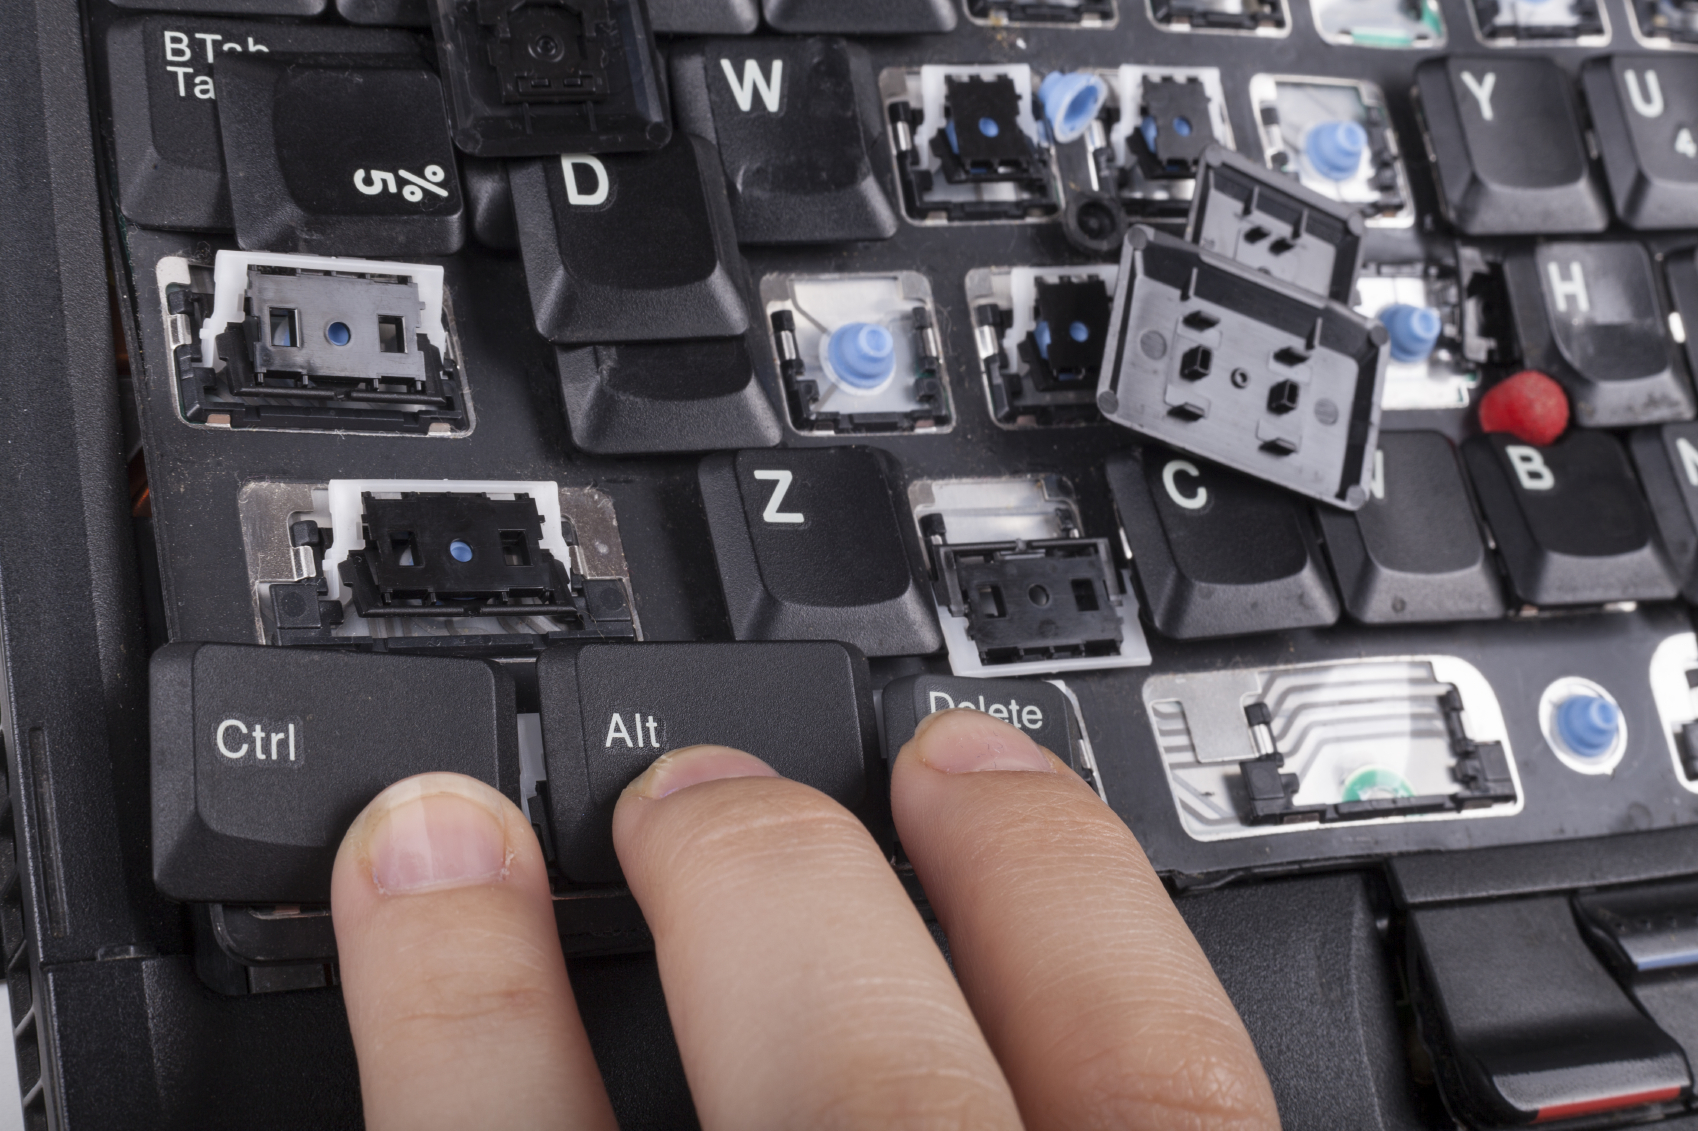 Fingers on alt crtl delete keys on broken laptop keyboard